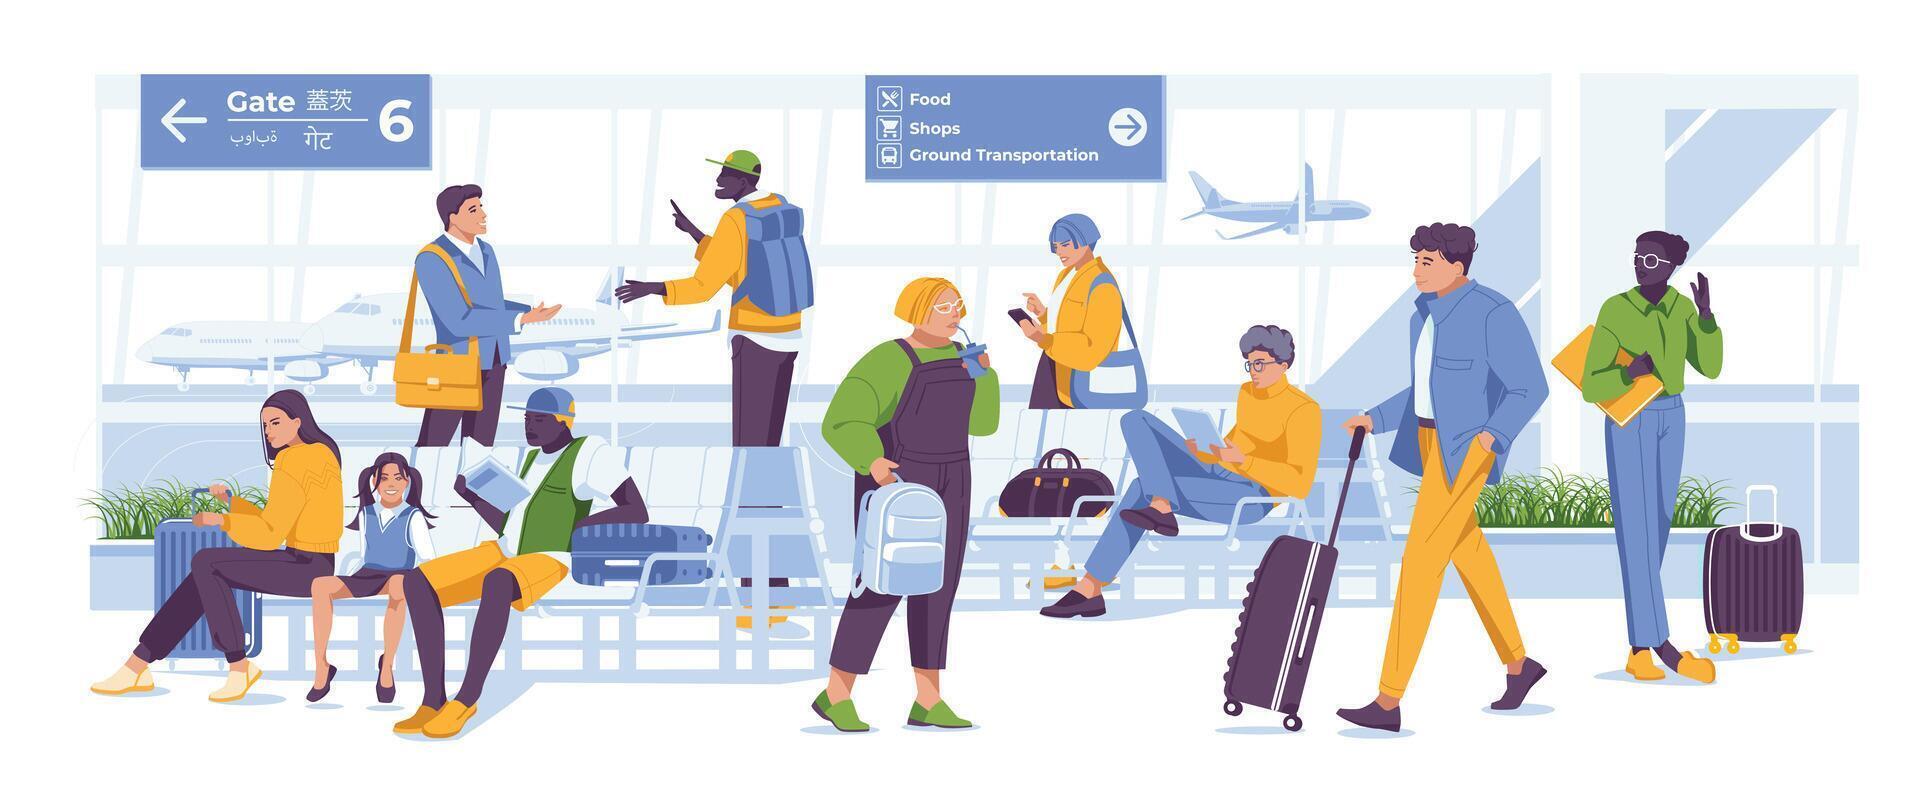 aeropuerto esperando habitación. Servicio escena con diferente caracteres. vector plano ilustración. viaje por avión.